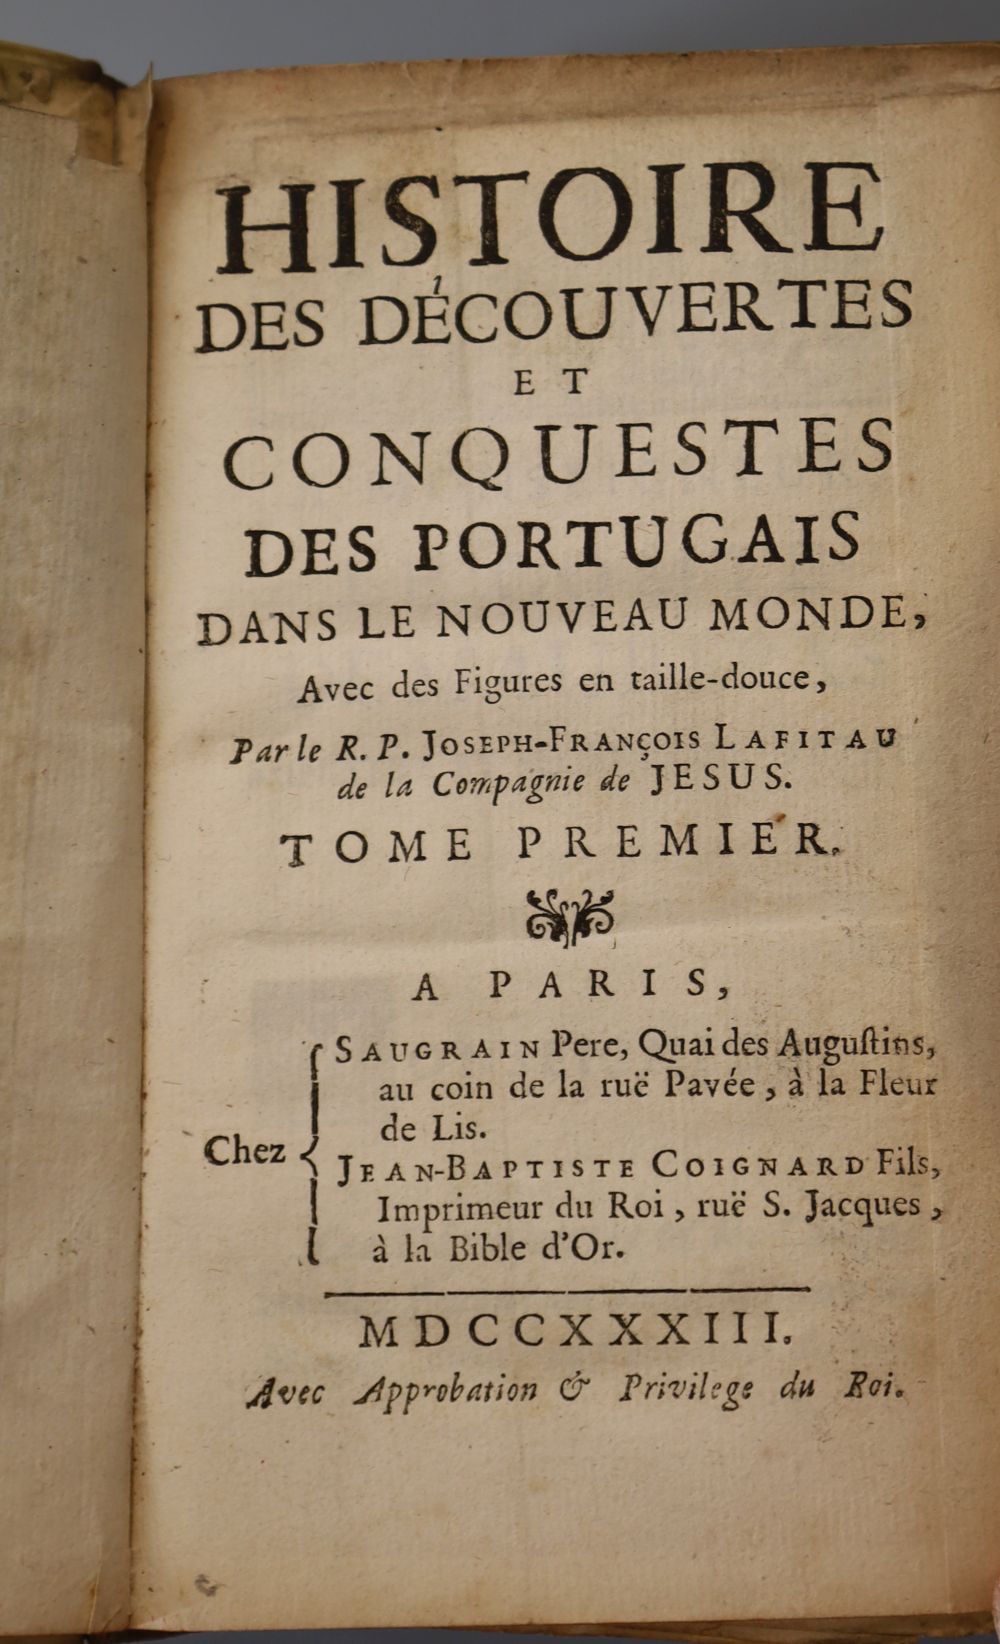 Lafitau, Rev. Pere, Joseph-Francois, 1681-1746. - Histoire des decouvertes et conquestas des Portugais, 4 vols, vellum, 8vo, folding en